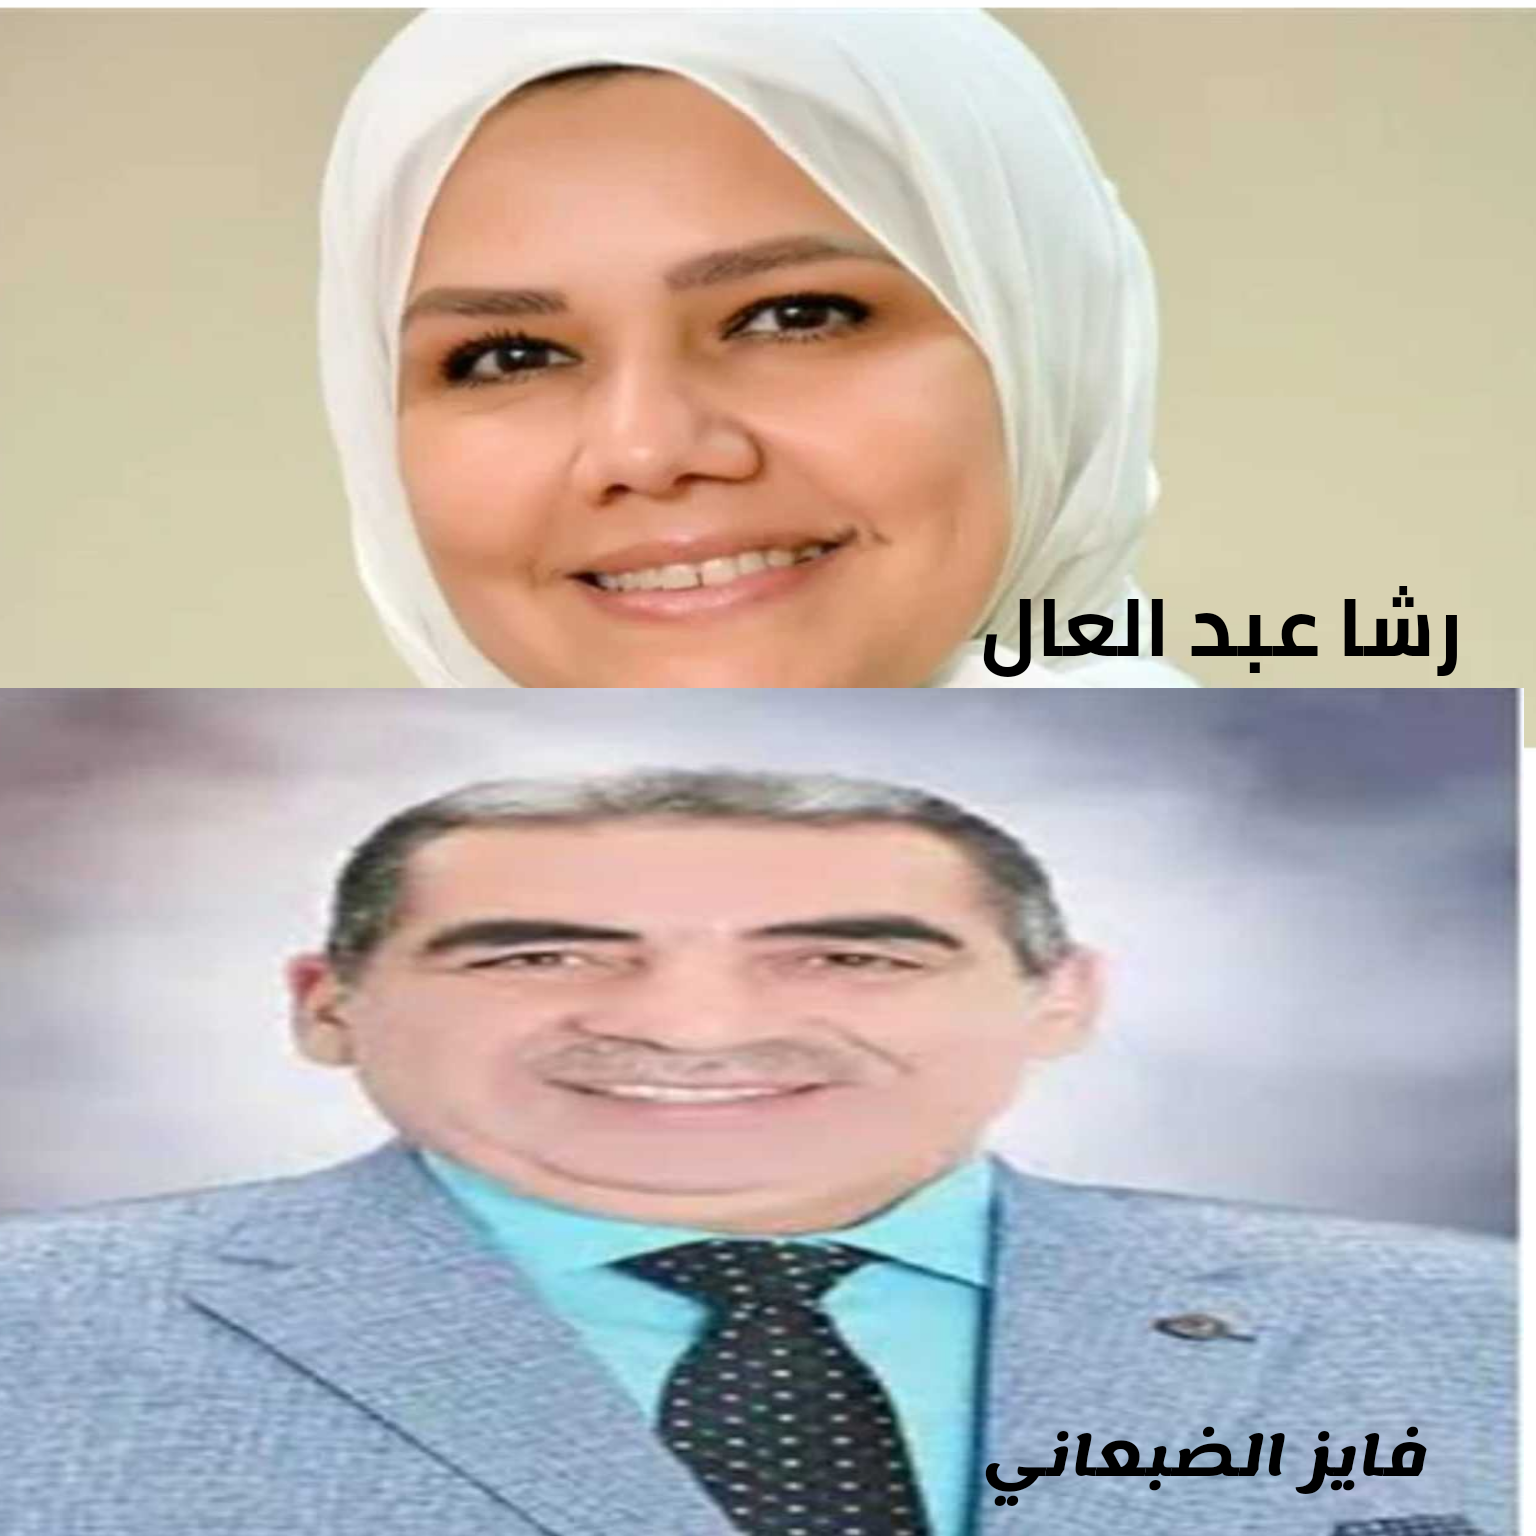 إقالة الضبعاني رئيس مصلحة الضرائب المصرية بعد ٥ أشهر من تعيينه